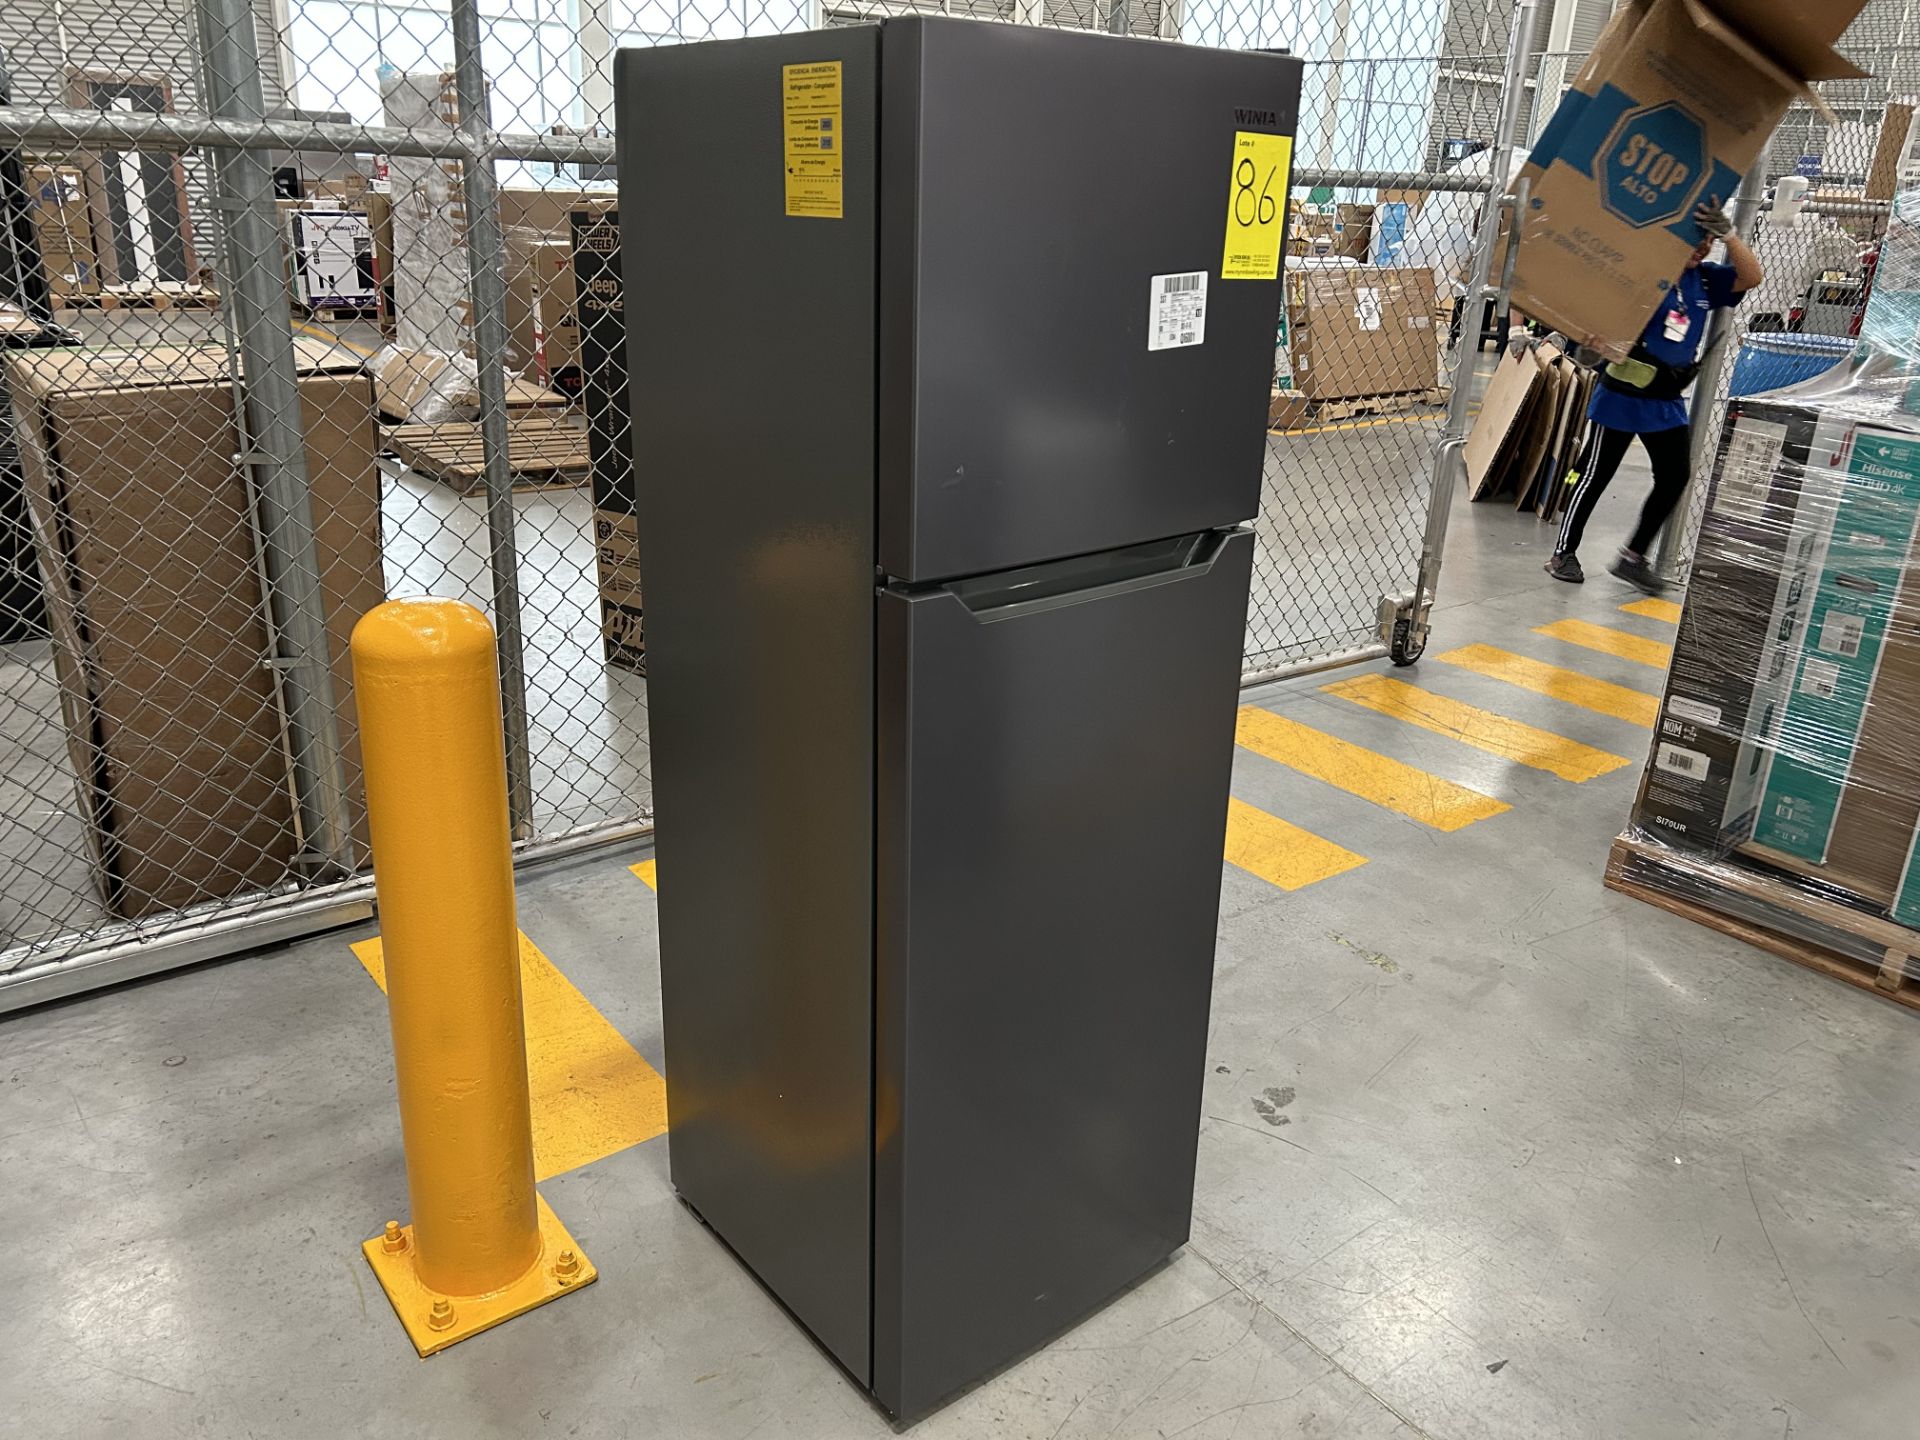 Lote de 2 refrigeradores contiene: 1 refrigerador Marca MABE, Modelo RME360FX, Serie 06730, Color G - Image 7 of 12